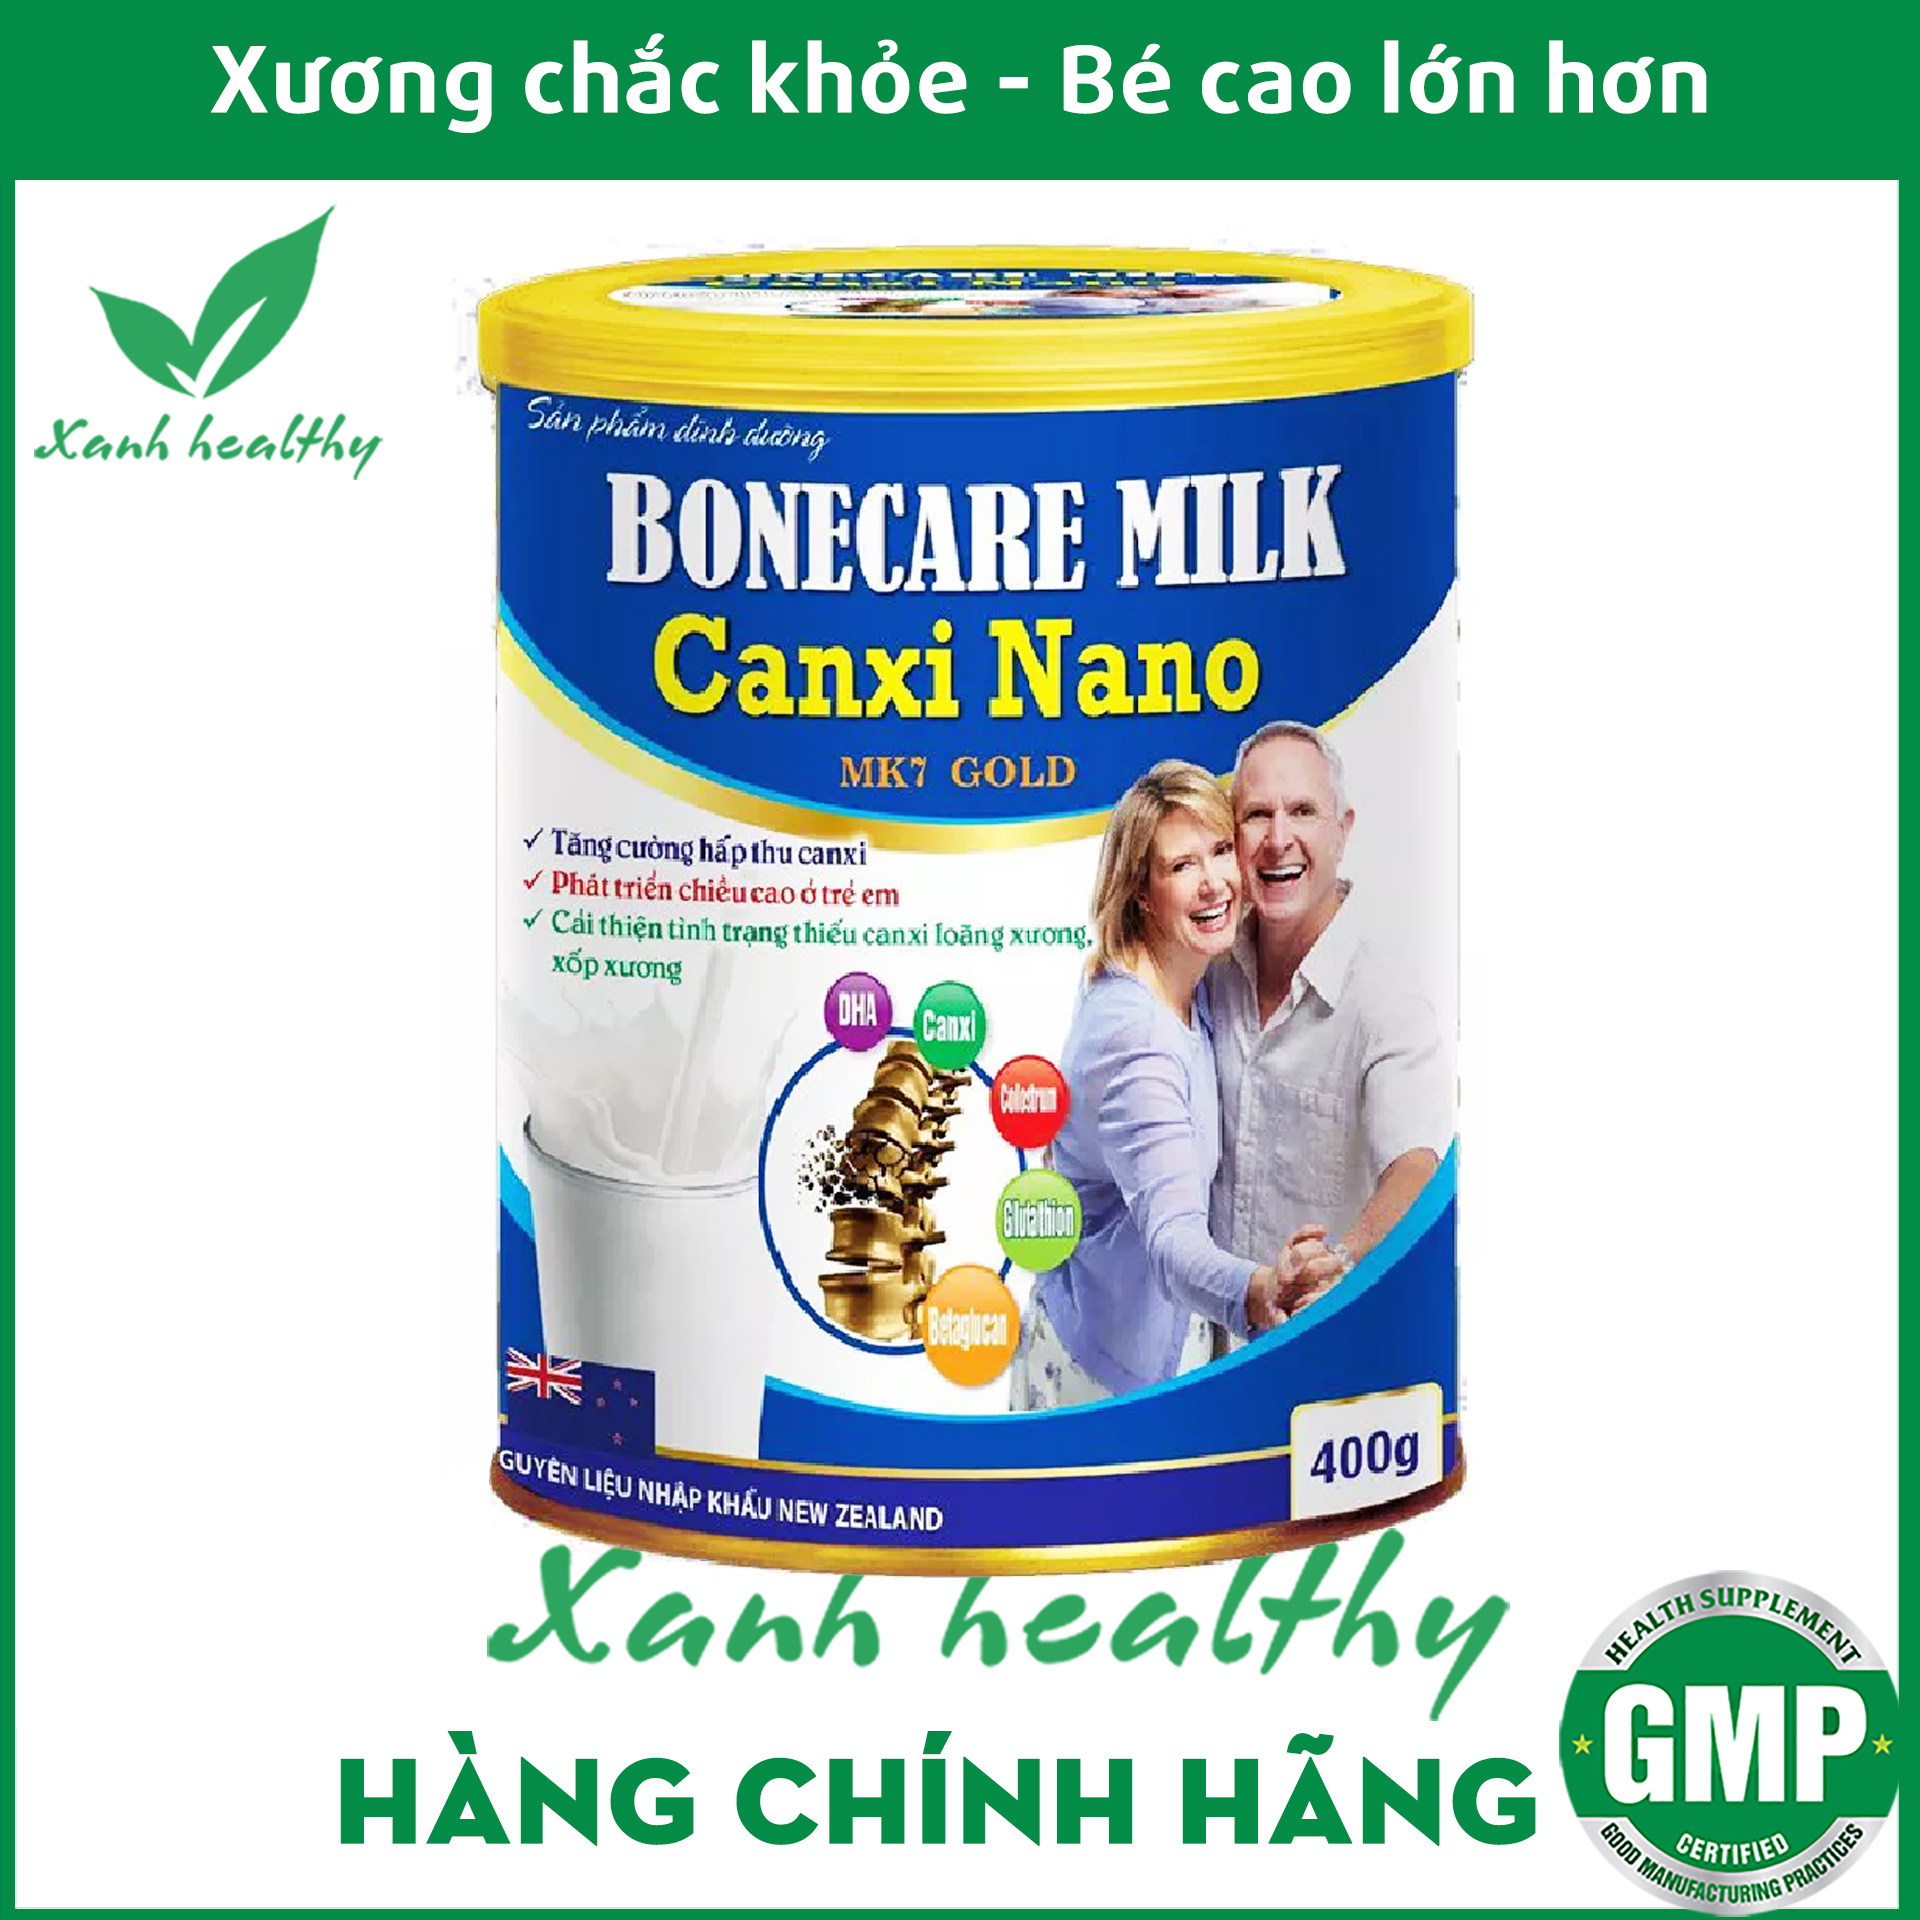 Sữa non Bonecare Milk Canxi Nano MK7 hấp thu canxi tăng chiều cao, chắc khỏe xương khớp - Hộp 400g - XANH Healthy